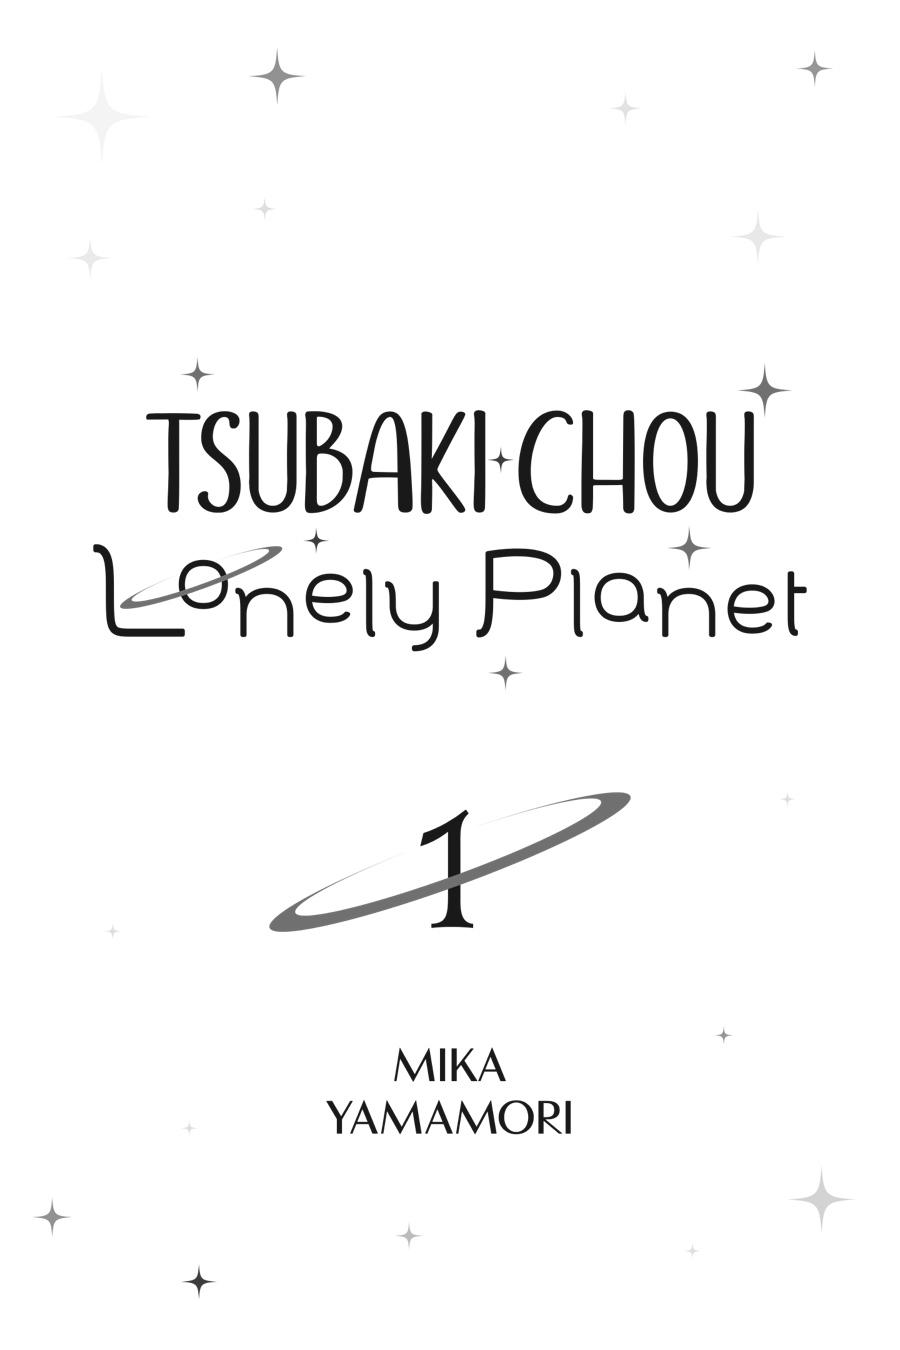 Tsubaki-chou Lonely Planet - episode 85 - 1